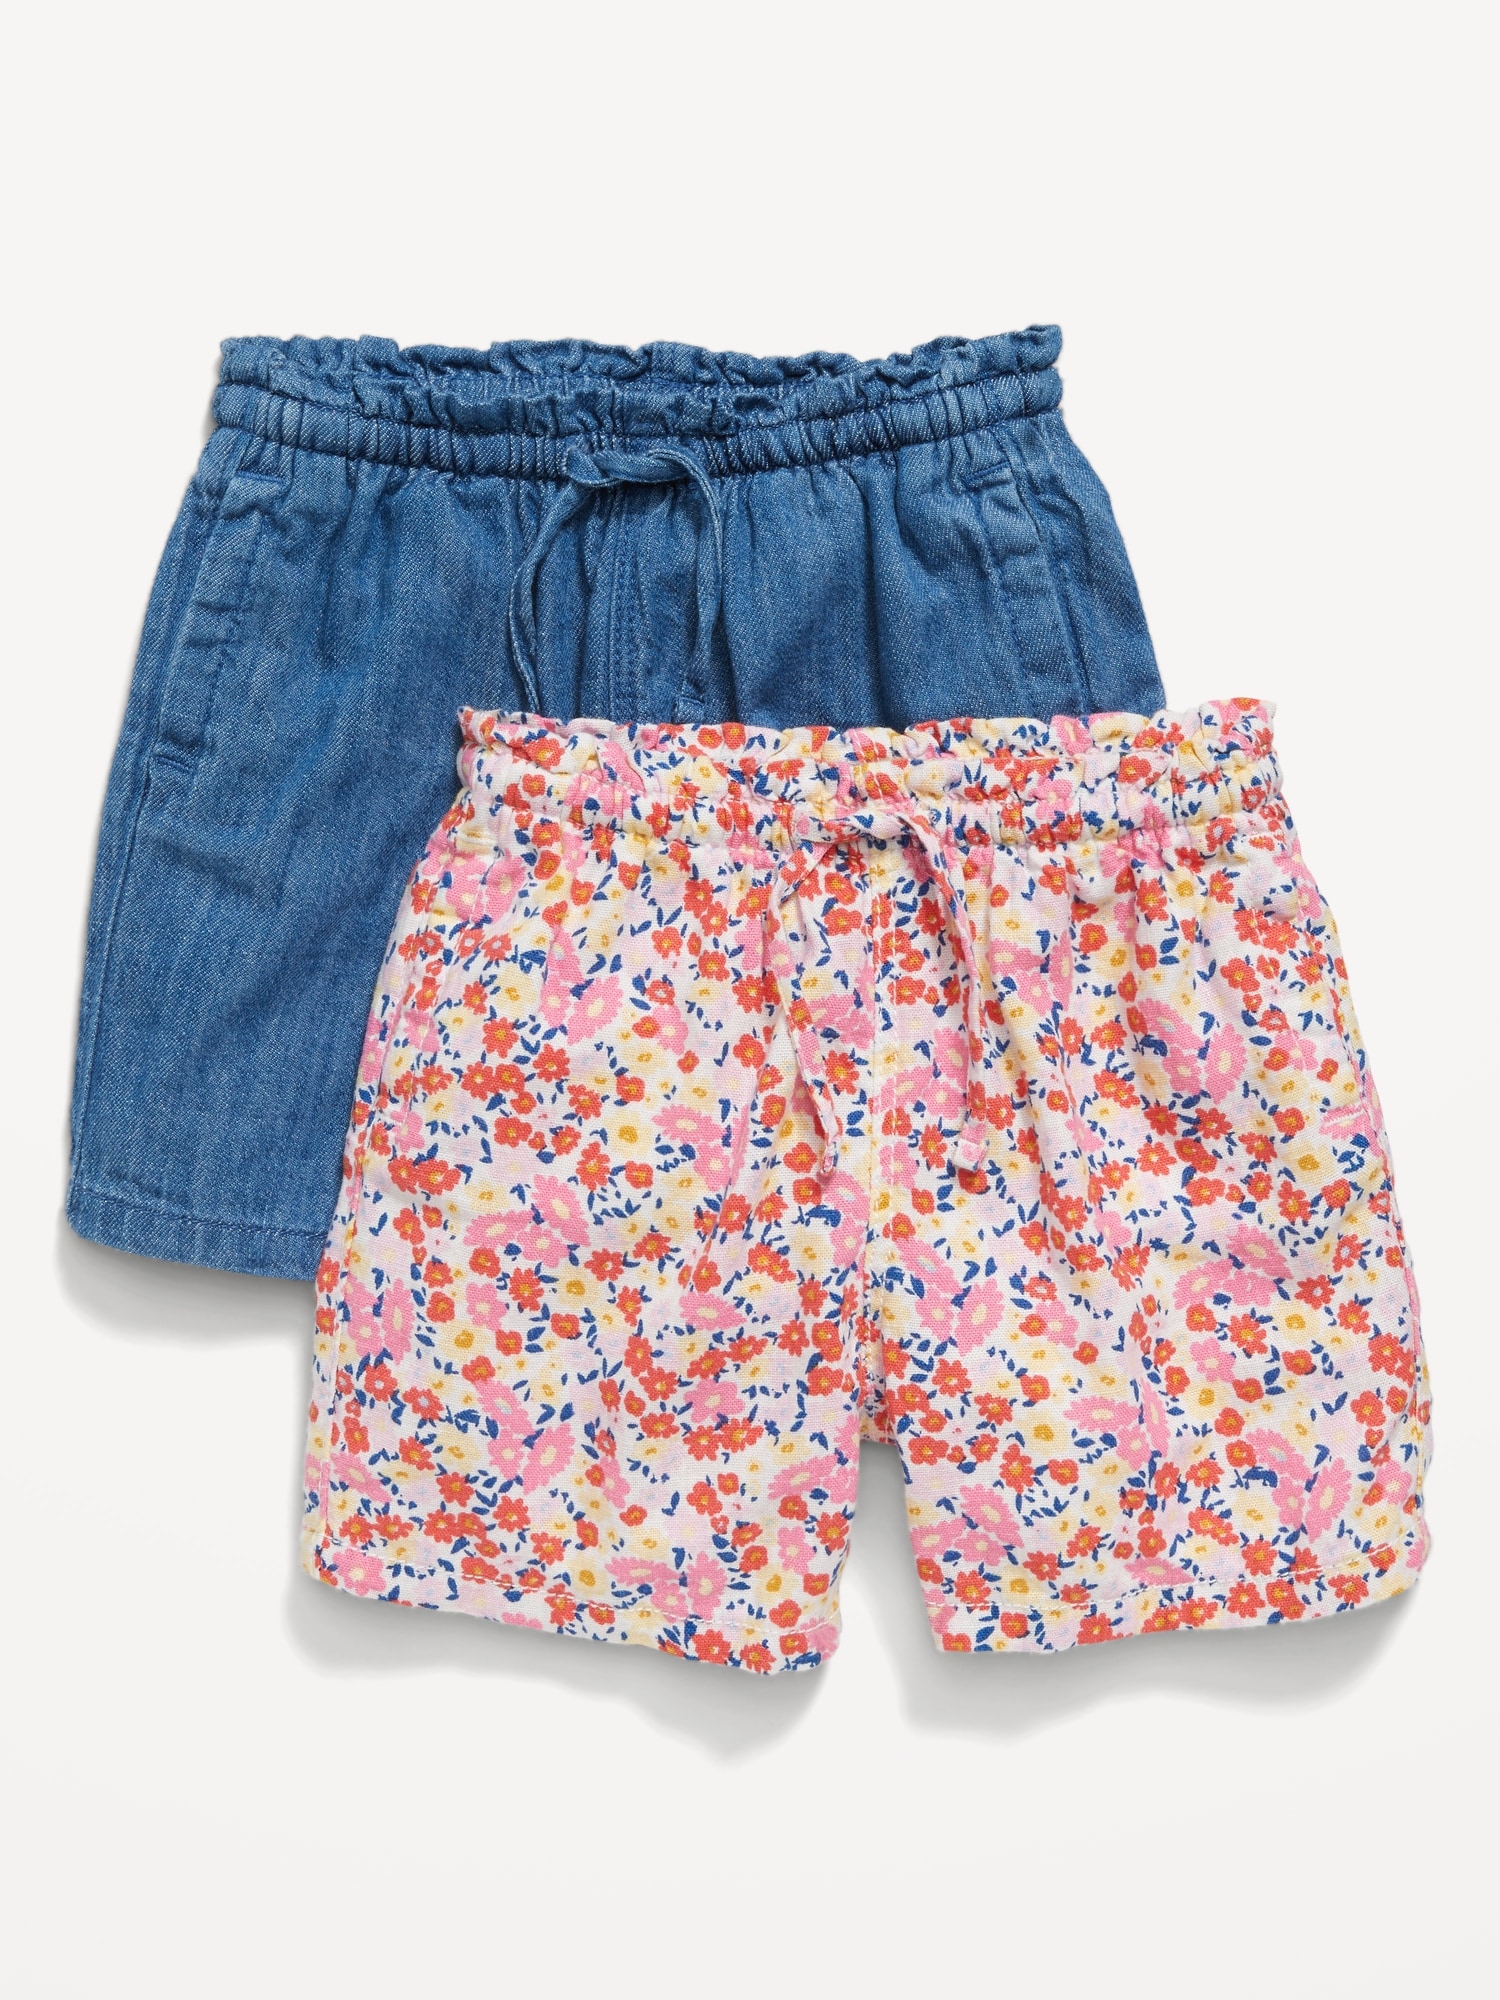 올드네이비 Linen-Blend Pull-On Shorts 2-Pack for Toddler Girls Hot Deal